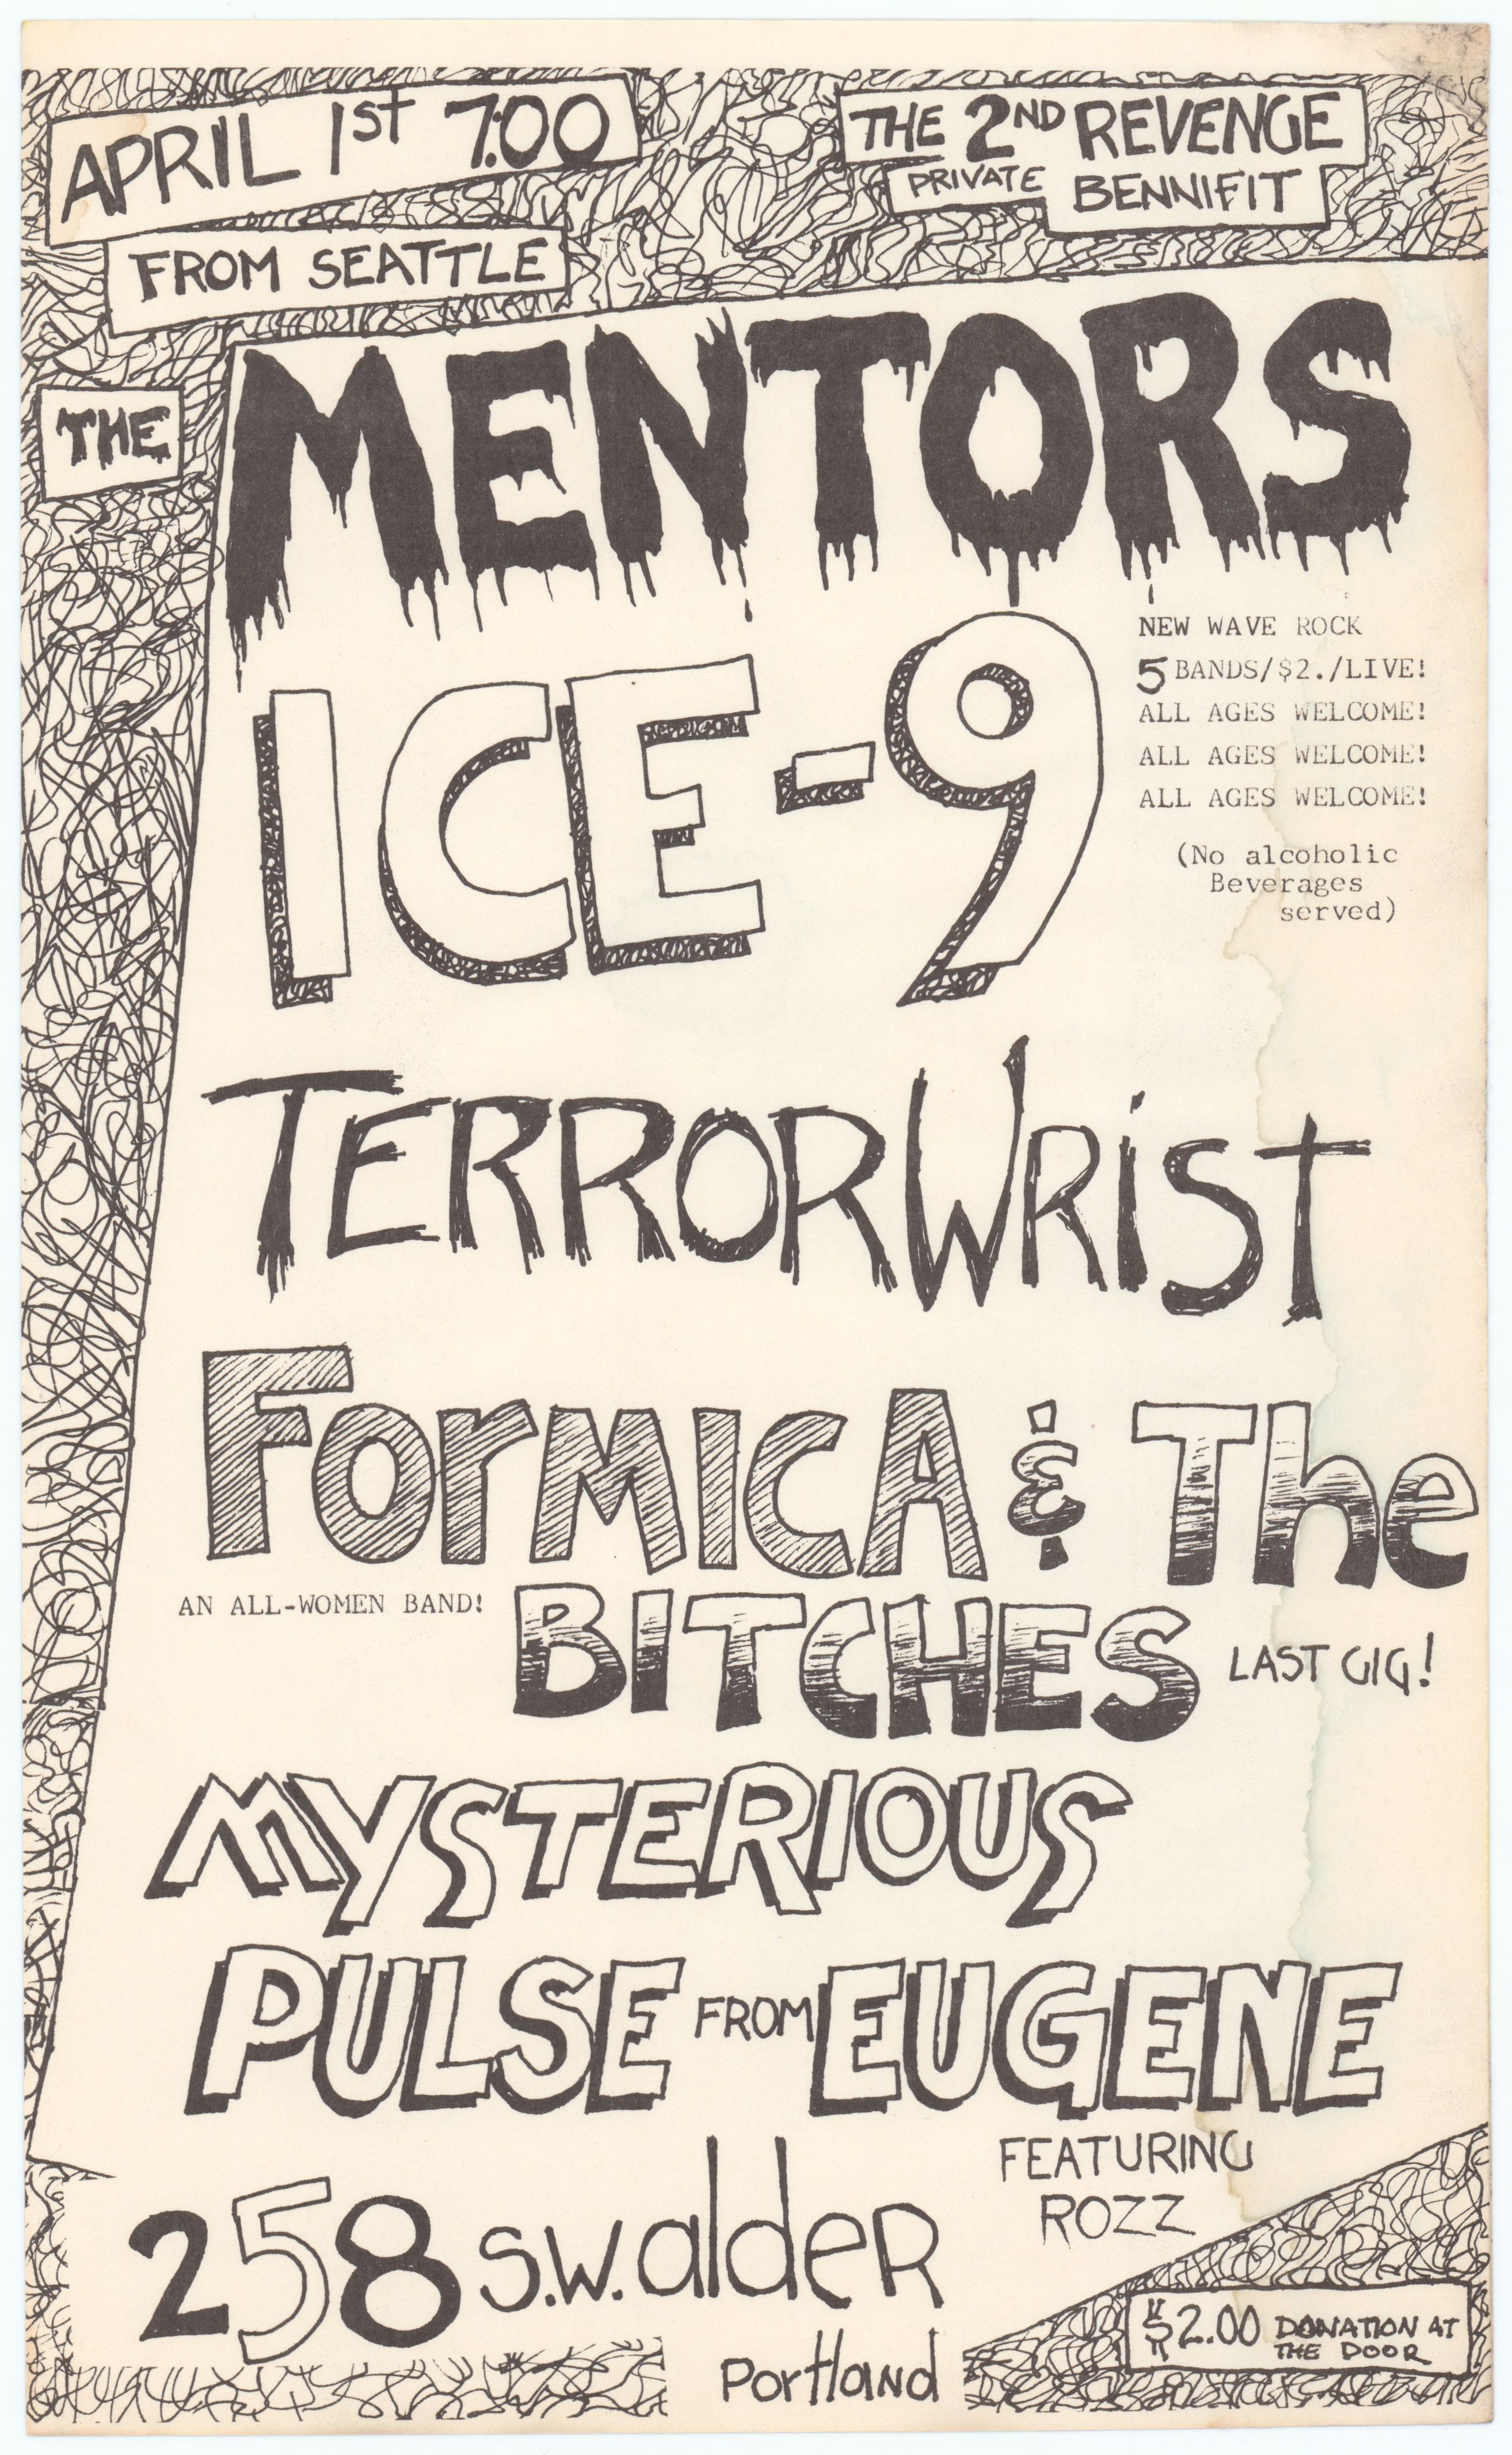 MXP-19.2 The Mentors & Ice-9 "Revenge Club Benefit" 1978 SW Alder Concert Poster